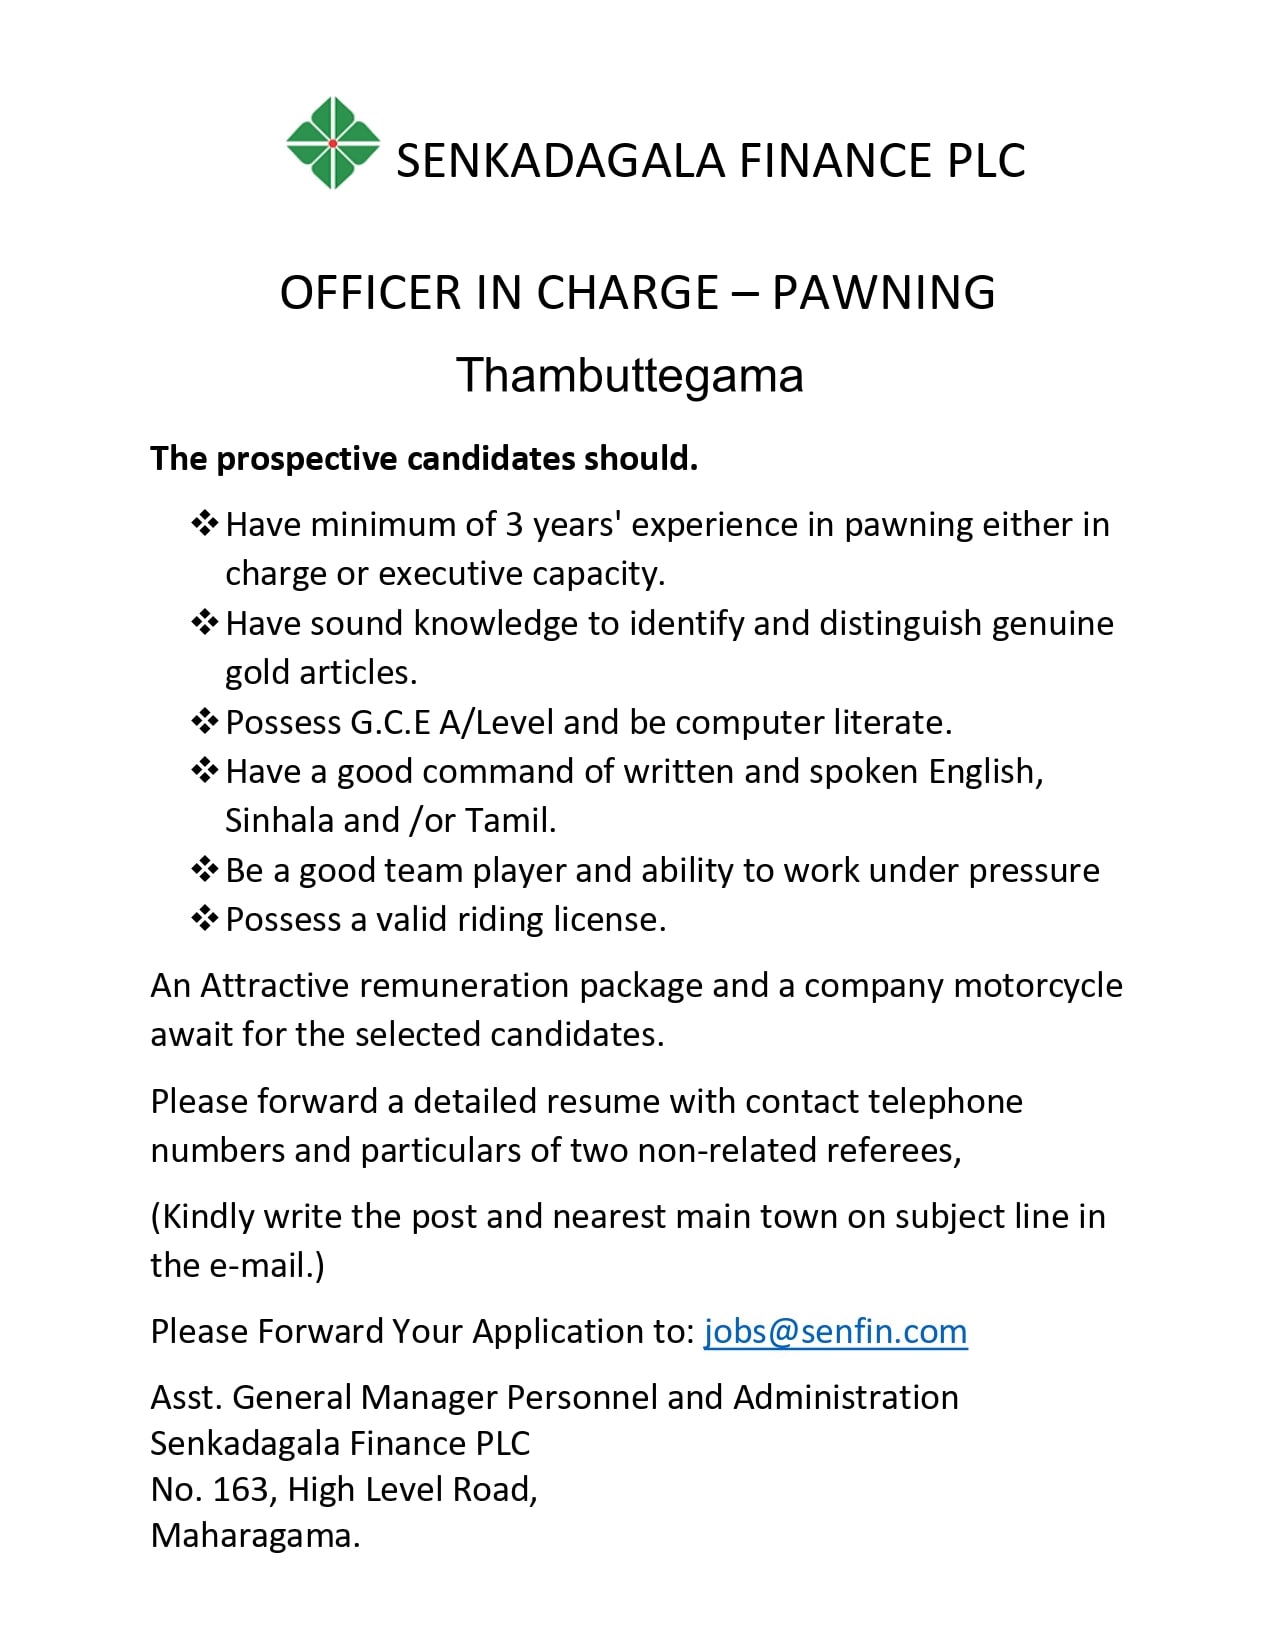 Ragama Job Vacancy 2022 at Senkadagala Finance - Officer in Charge Jobs Vacancies